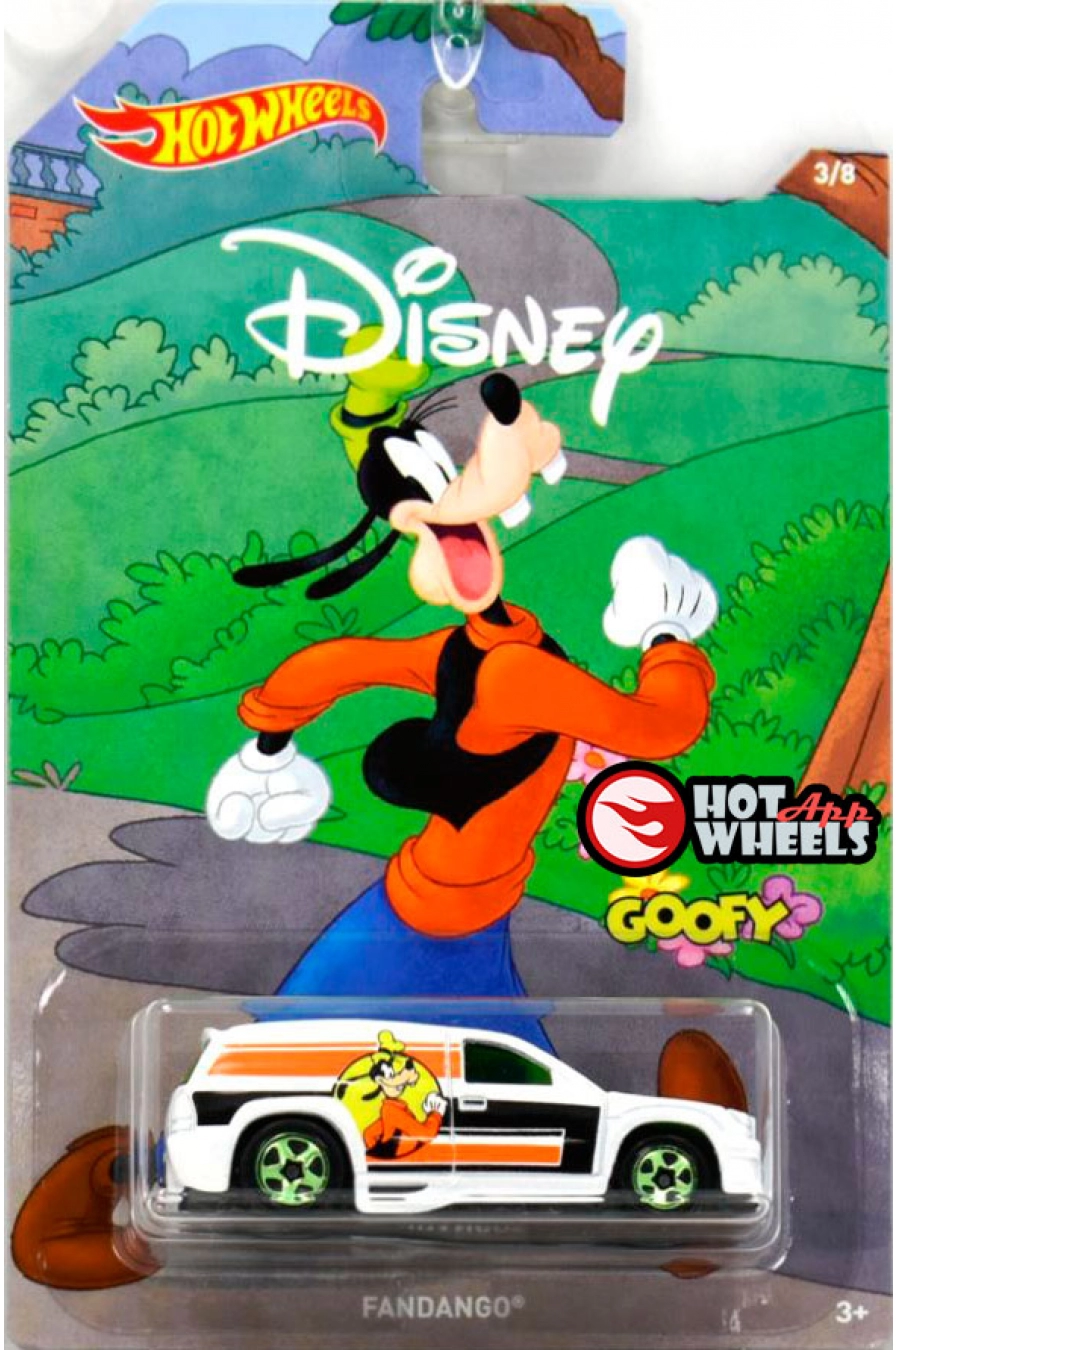 Mattel Hot Wheels Disney Serie Modell Fandango Goofy  3/8 